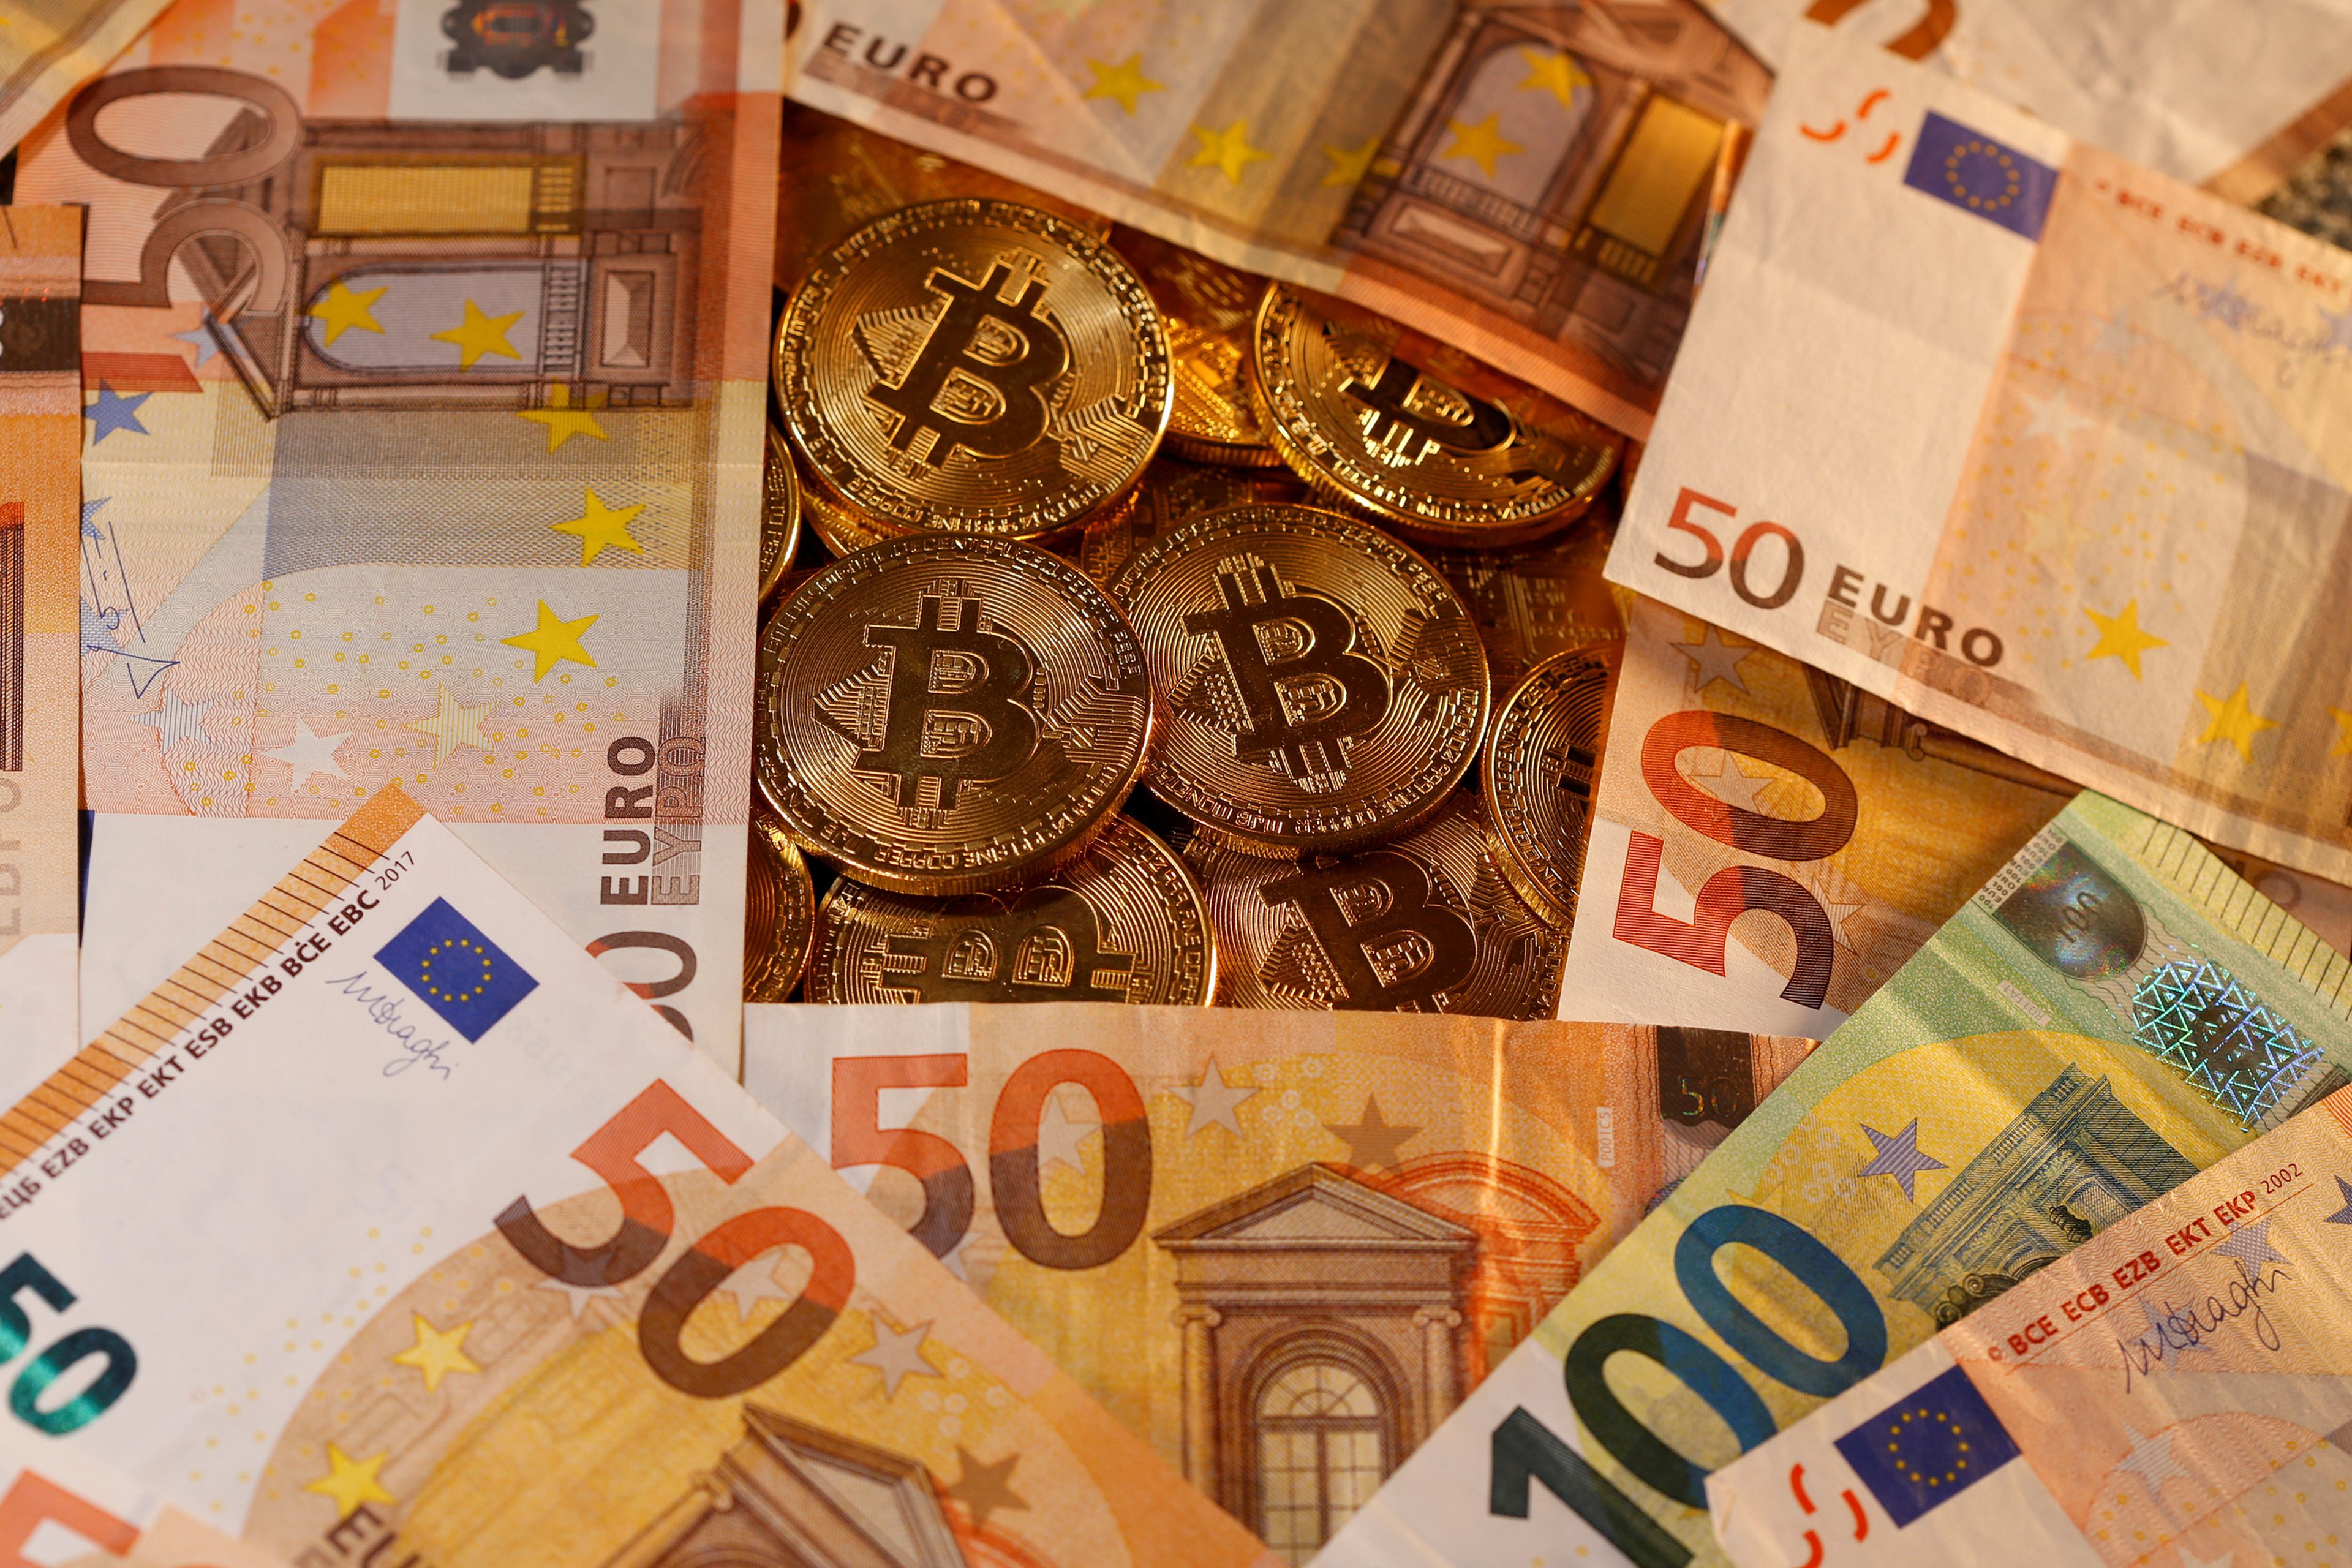 Billetes de euro junto a representaciones de bitcoins